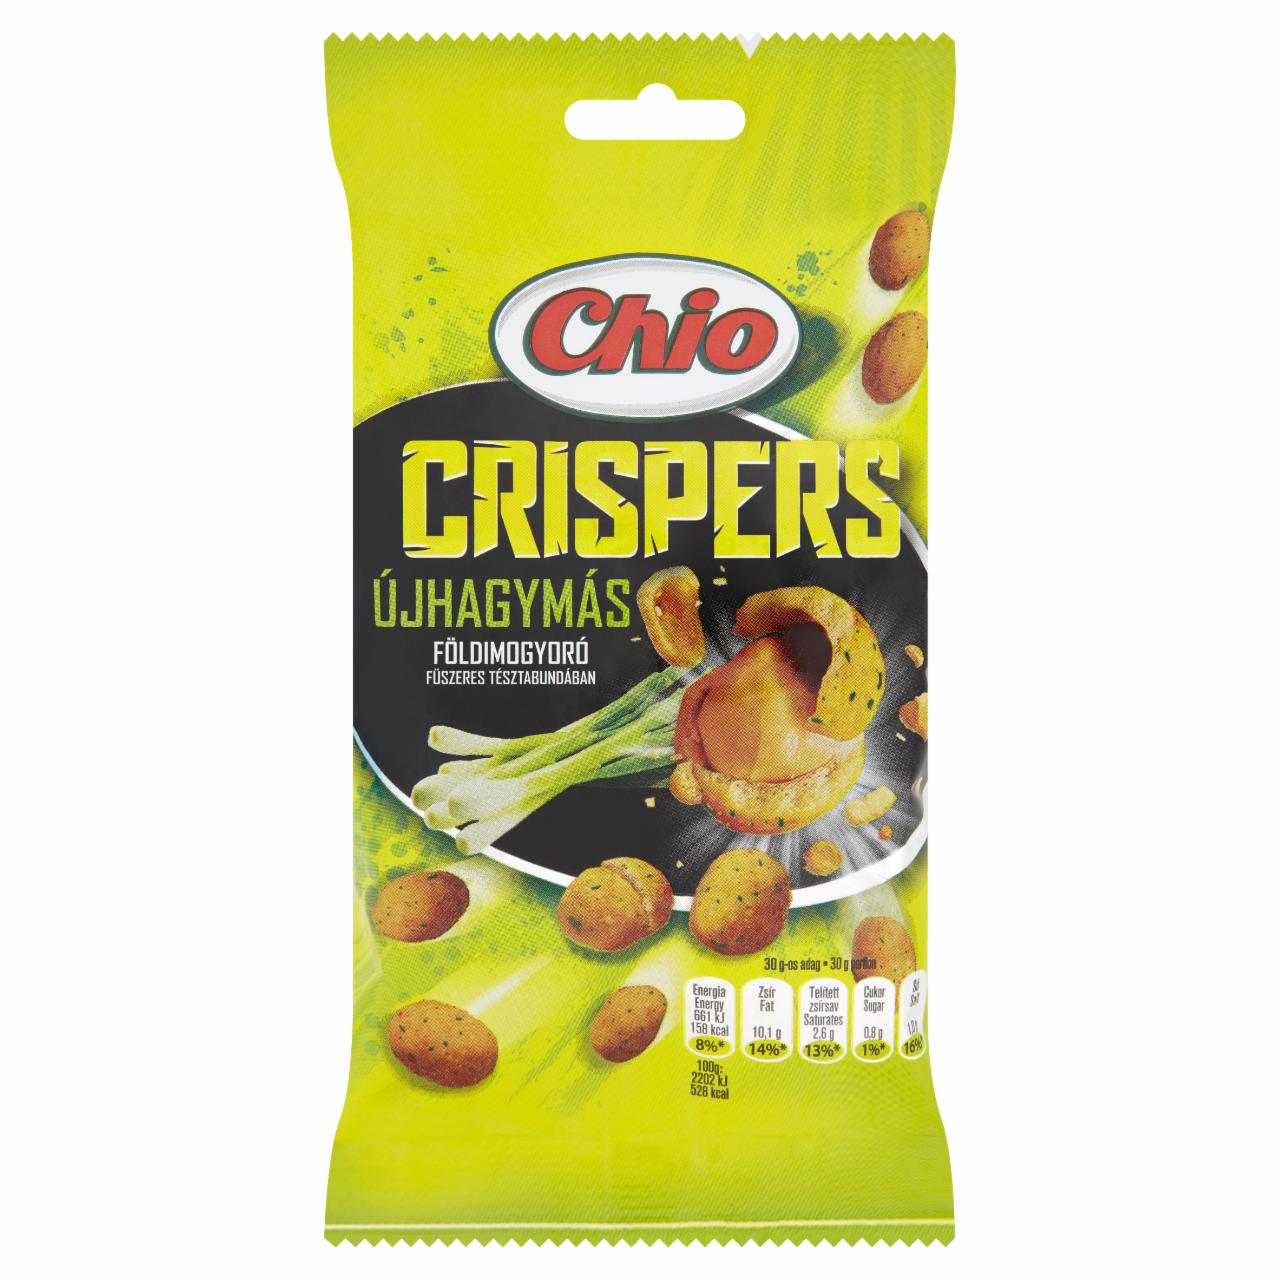 Képek - Chio Crispers csípős földimogyoró újhagyma ízű tésztabundában 60 g